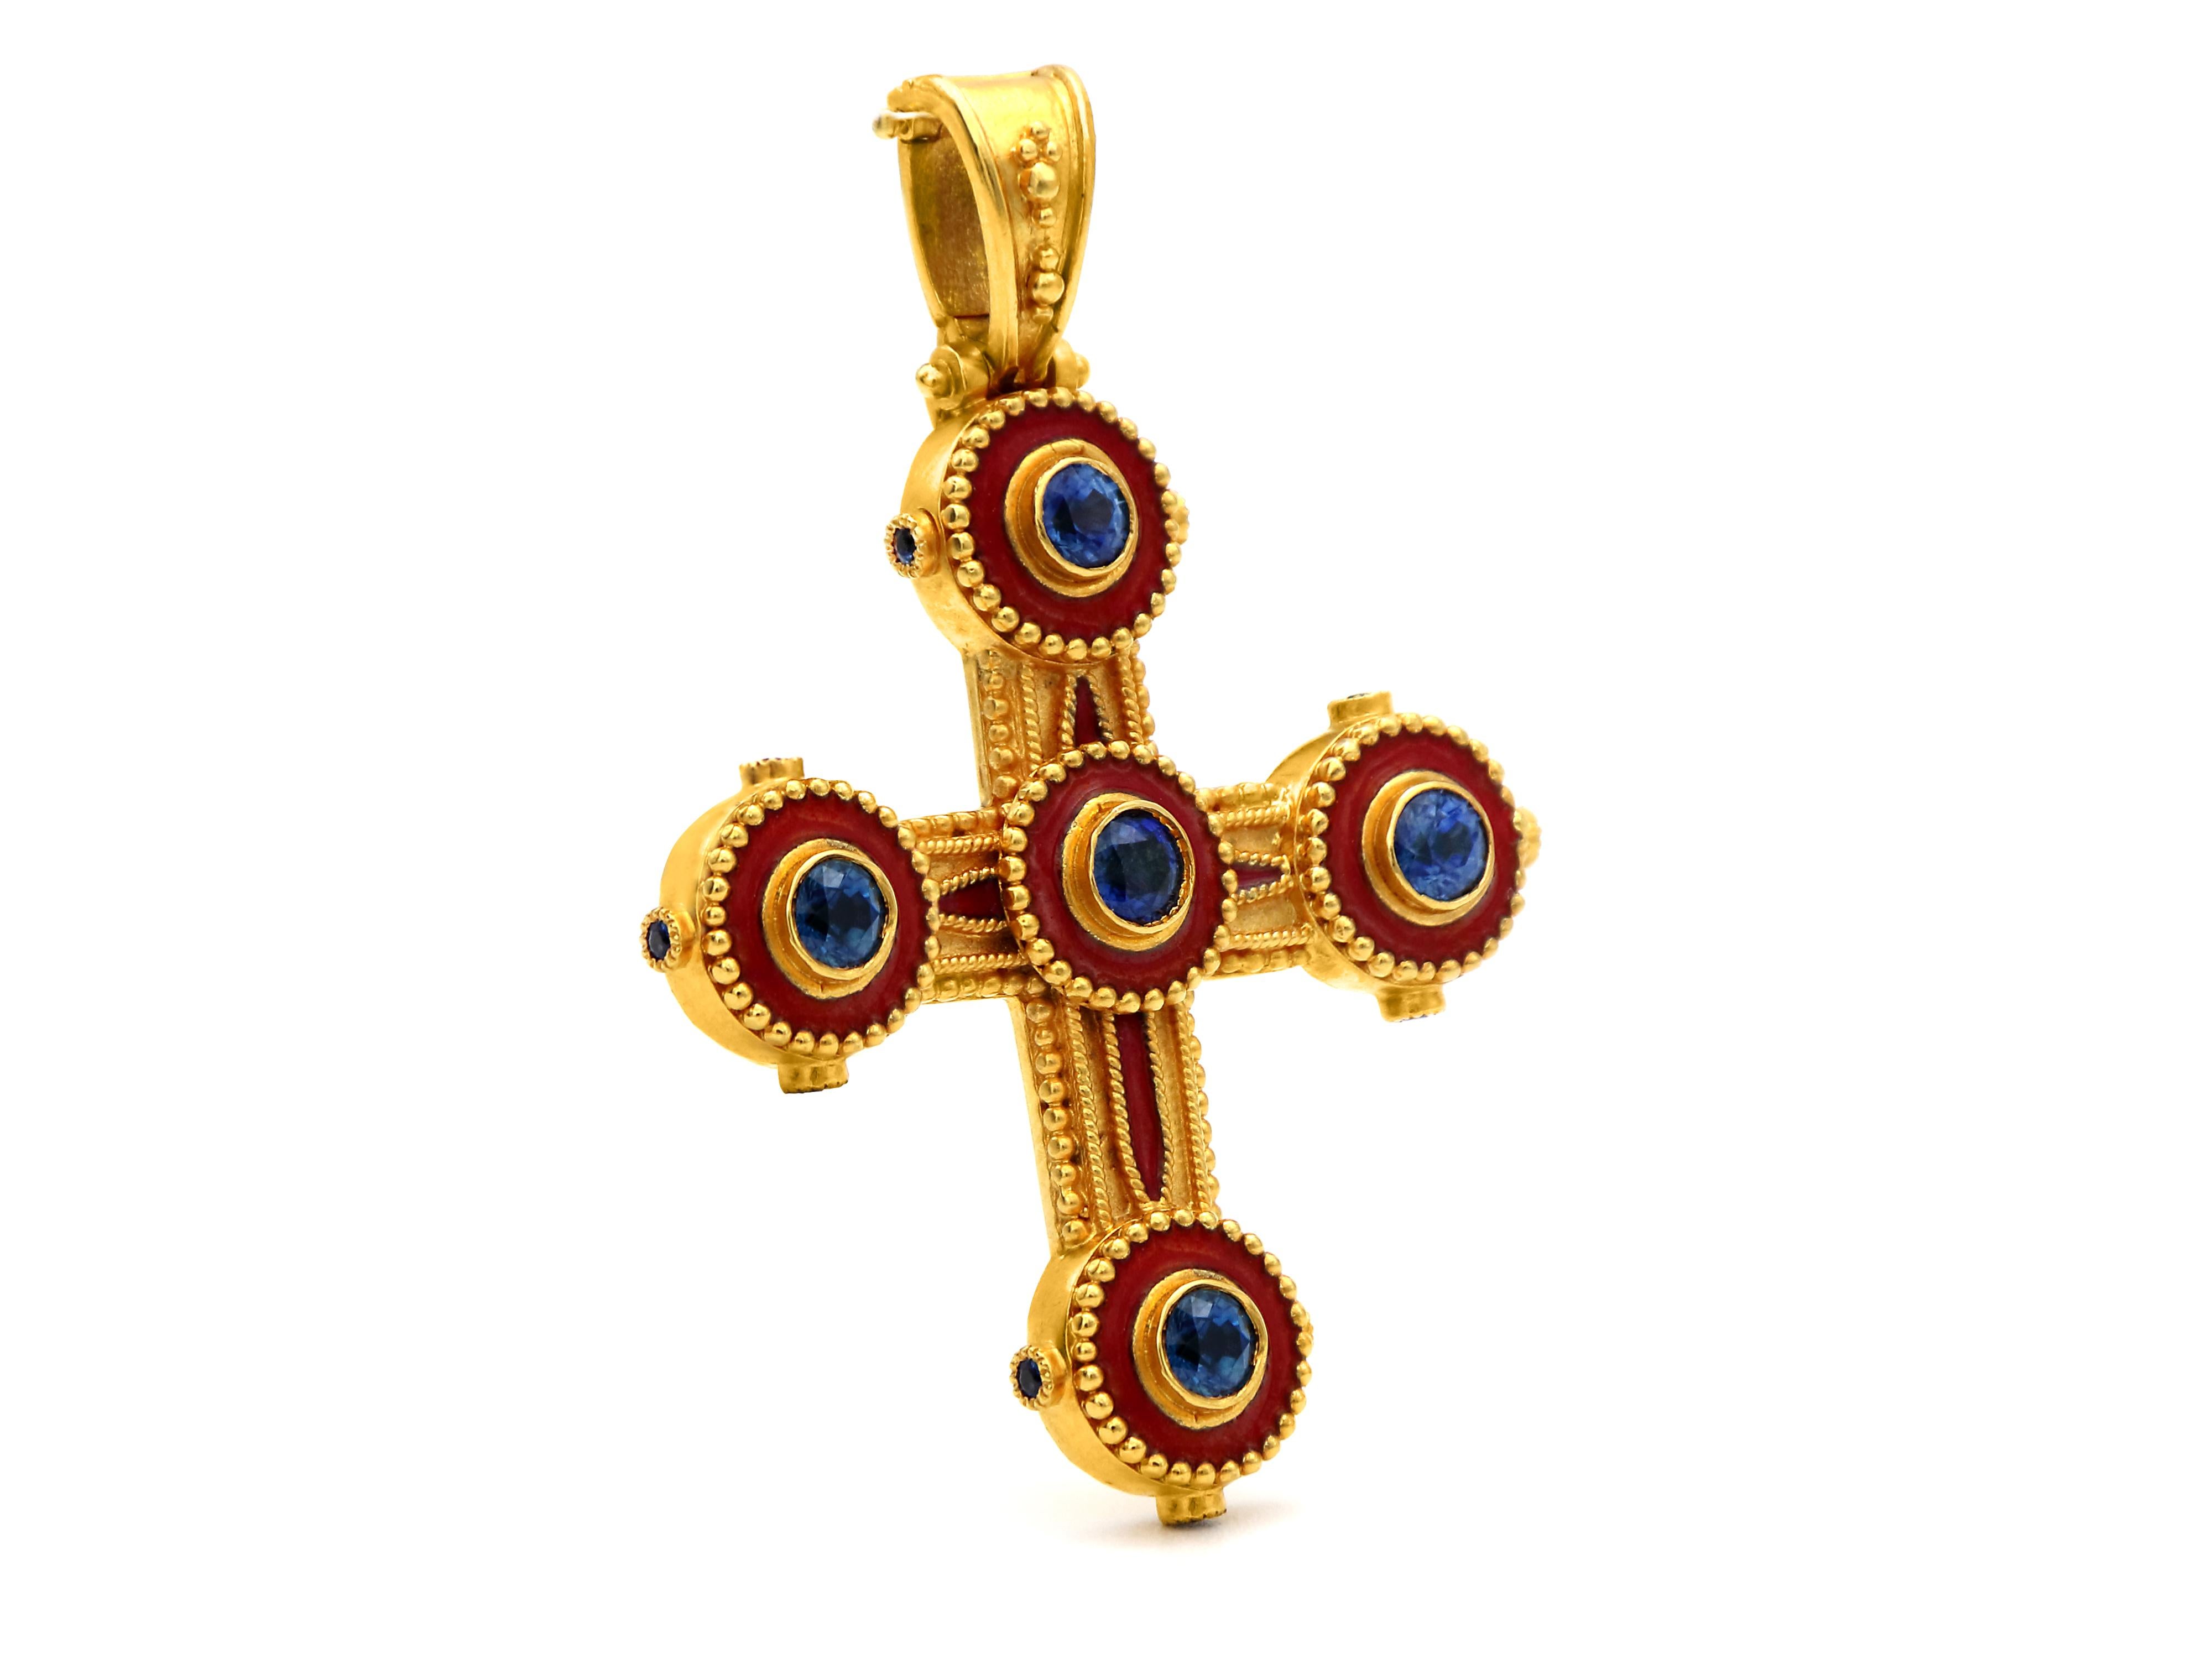 Croix d'époque byzantine en or 18 carats entièrement réalisée à la main et décorée de granulation, de saphirs ronds de 1,15 carats et d'émail rouge. Sur les côtés du cercle, trois saphirs plus petits, d'une valeur totale de 0,36 carat, ajoutent de